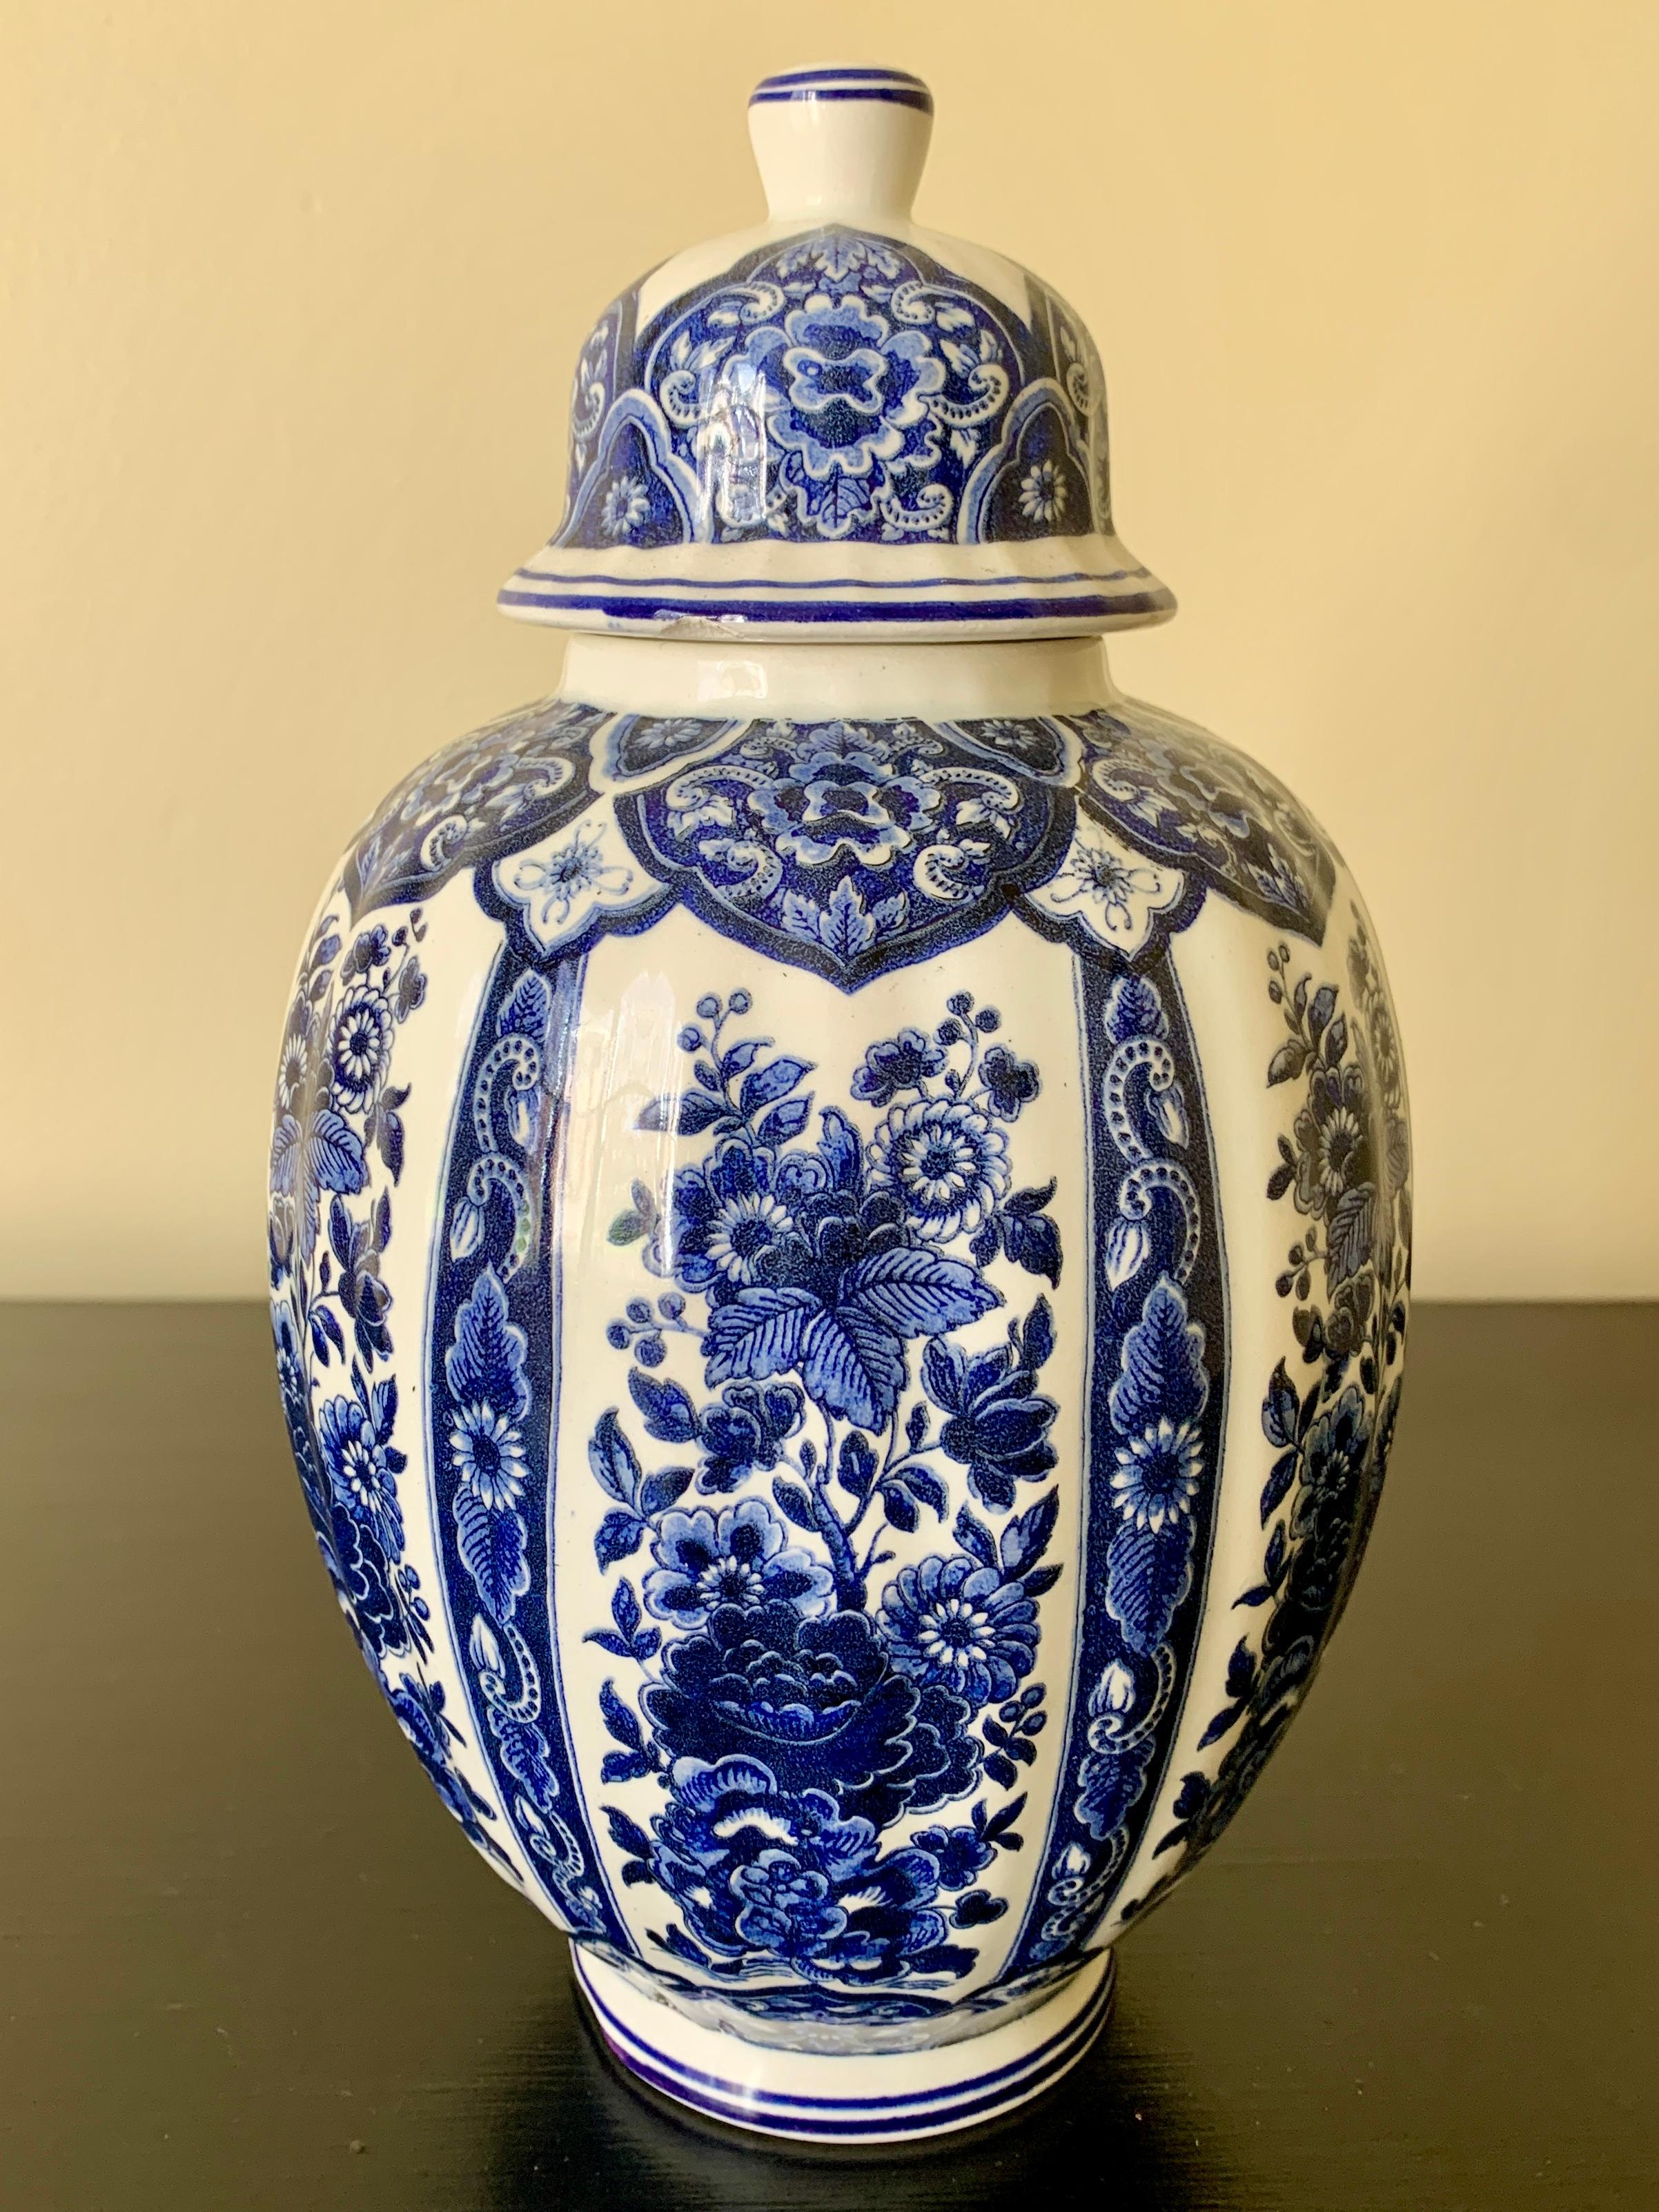 Ein schönes Delft Chinoiserie-Stil blau und weiß Porzellan bedeckt Ingwer Glas oder Tempel-Glas

Von Ardalt Blue Delfia

Italien, Mitte des 20. Jahrhunderts

Maße: 5,25ʺB × 5,25ʺT × 9,5ʺH.

Guter Vintage-Zustand. Kleine Chips am Deckel und ein